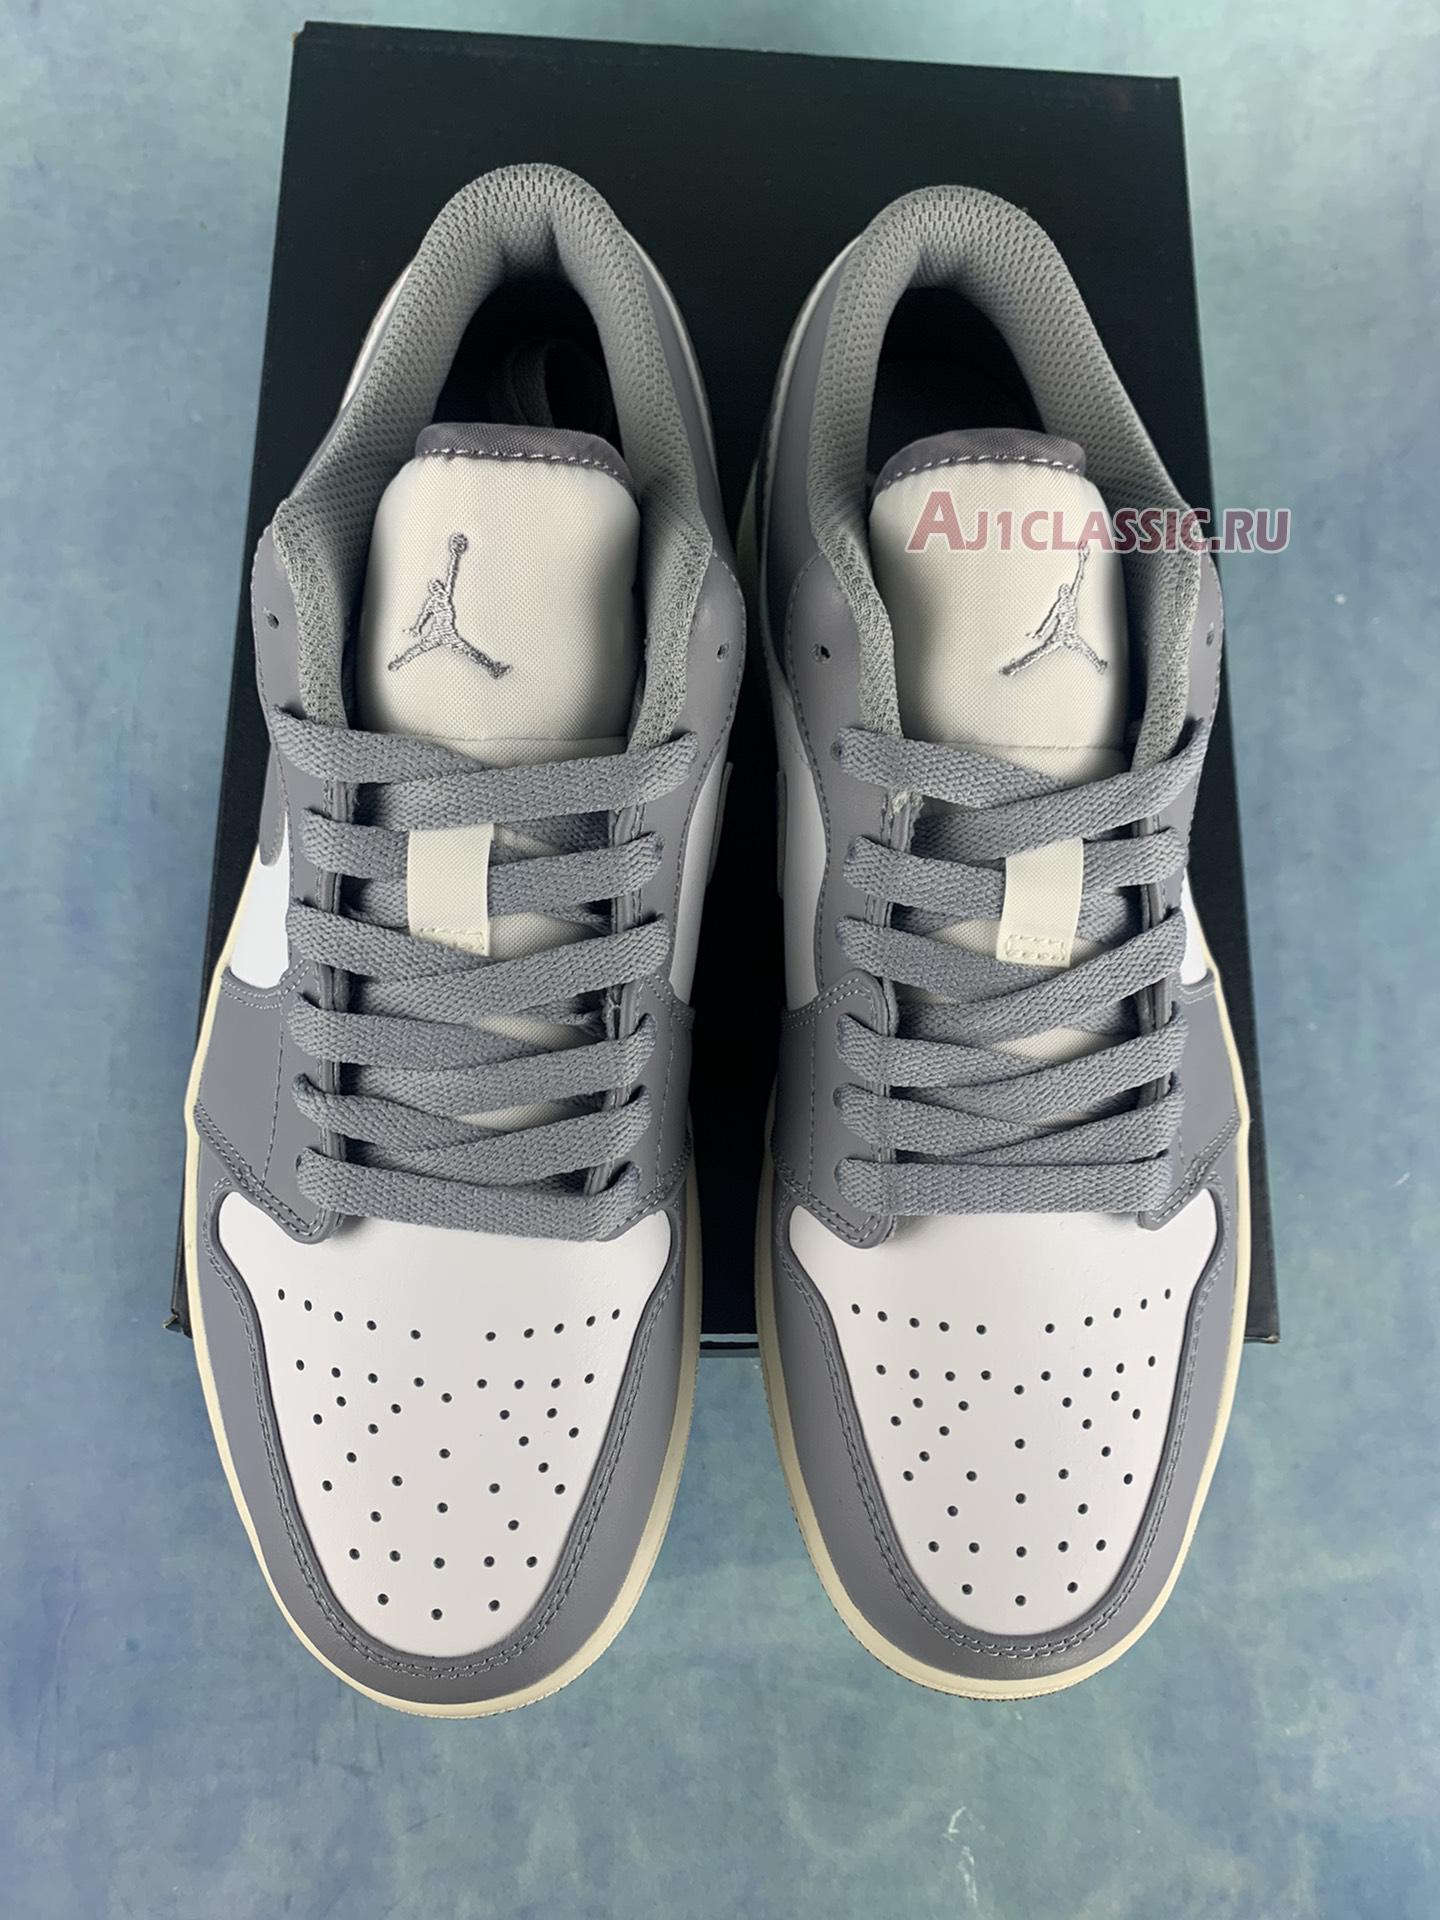 Air Jordan 1 Low "Vintage Grey" 553558-053